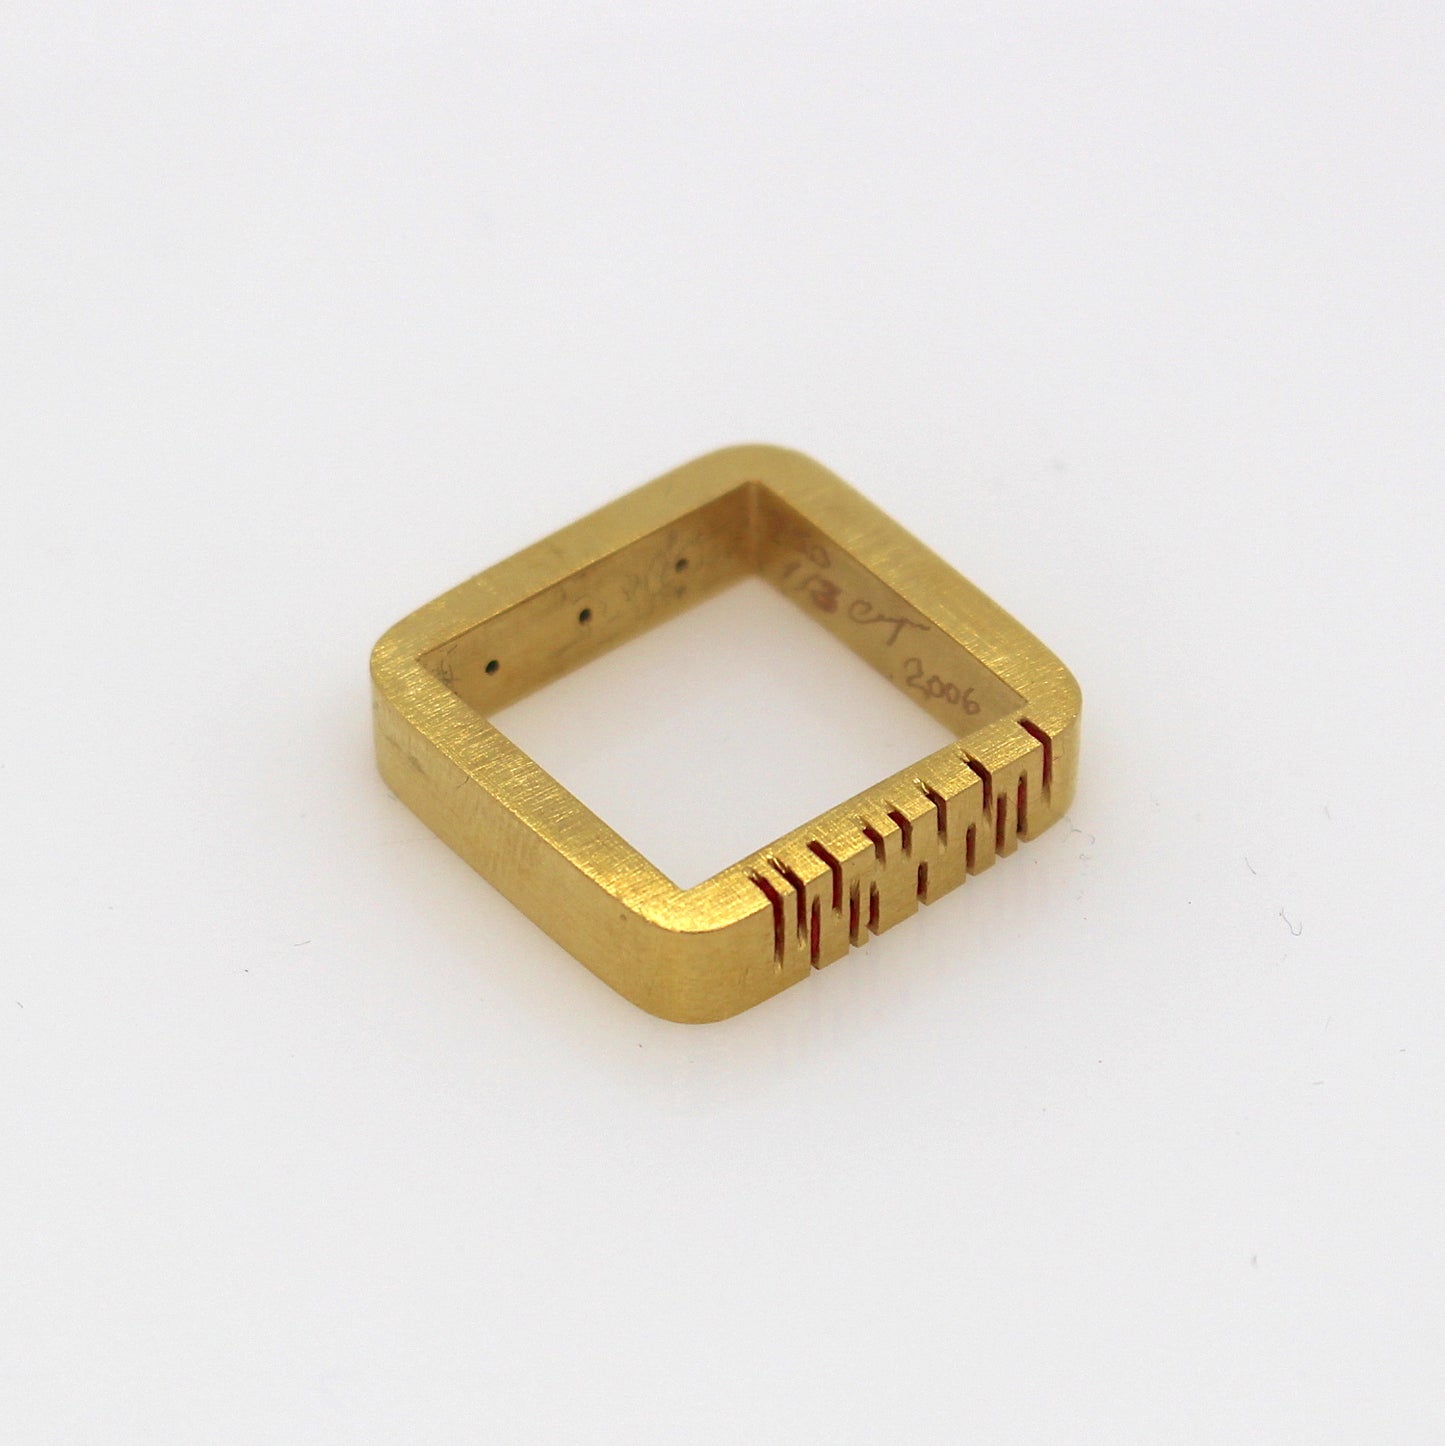 18ct gold unisex ring. "Mutual Orgasm" (2006)